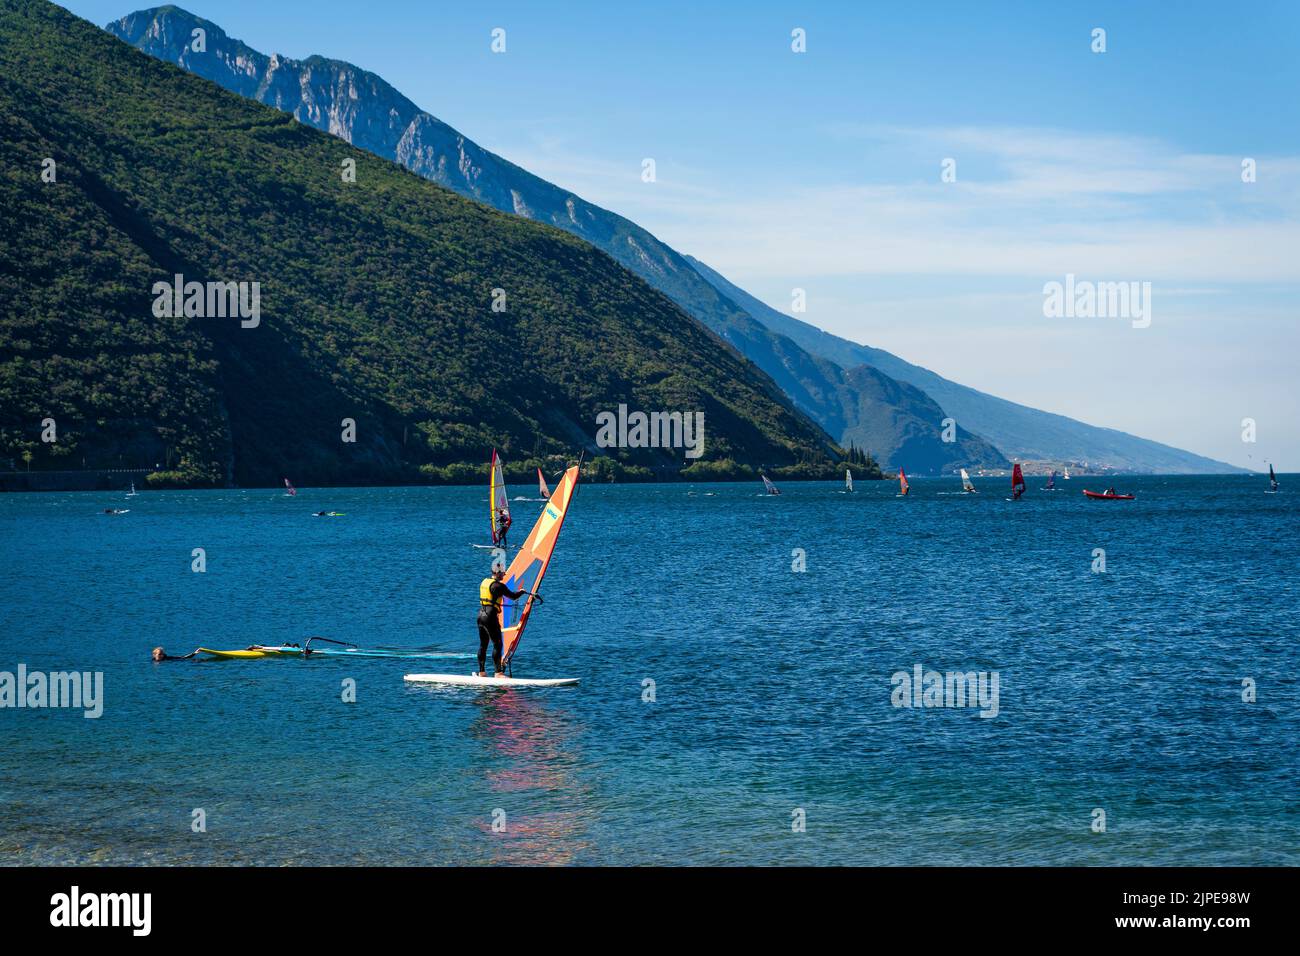 Nago-Torbole, Lago de Garda, Italia - 06 de junio de 2022: Windsurf en una tabla de surf en la orilla norte del Lago de Garda, en Italia, la ciudad de Torbole es popular Foto de stock